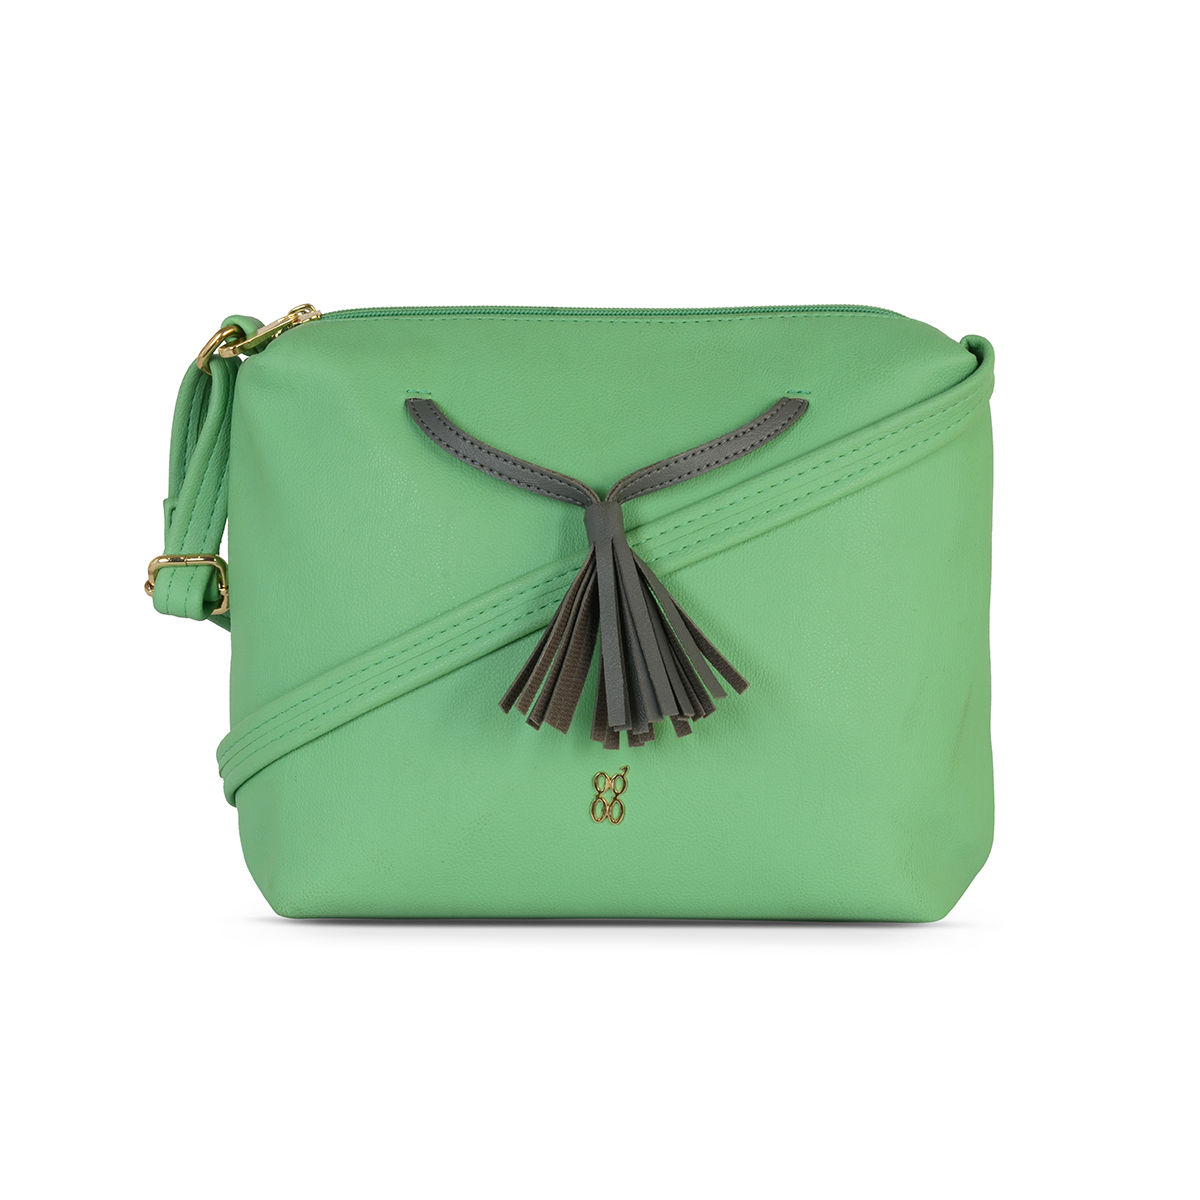 Buy Baggit Women's Satchel Handbag - L1 (Green) at Amazon.in